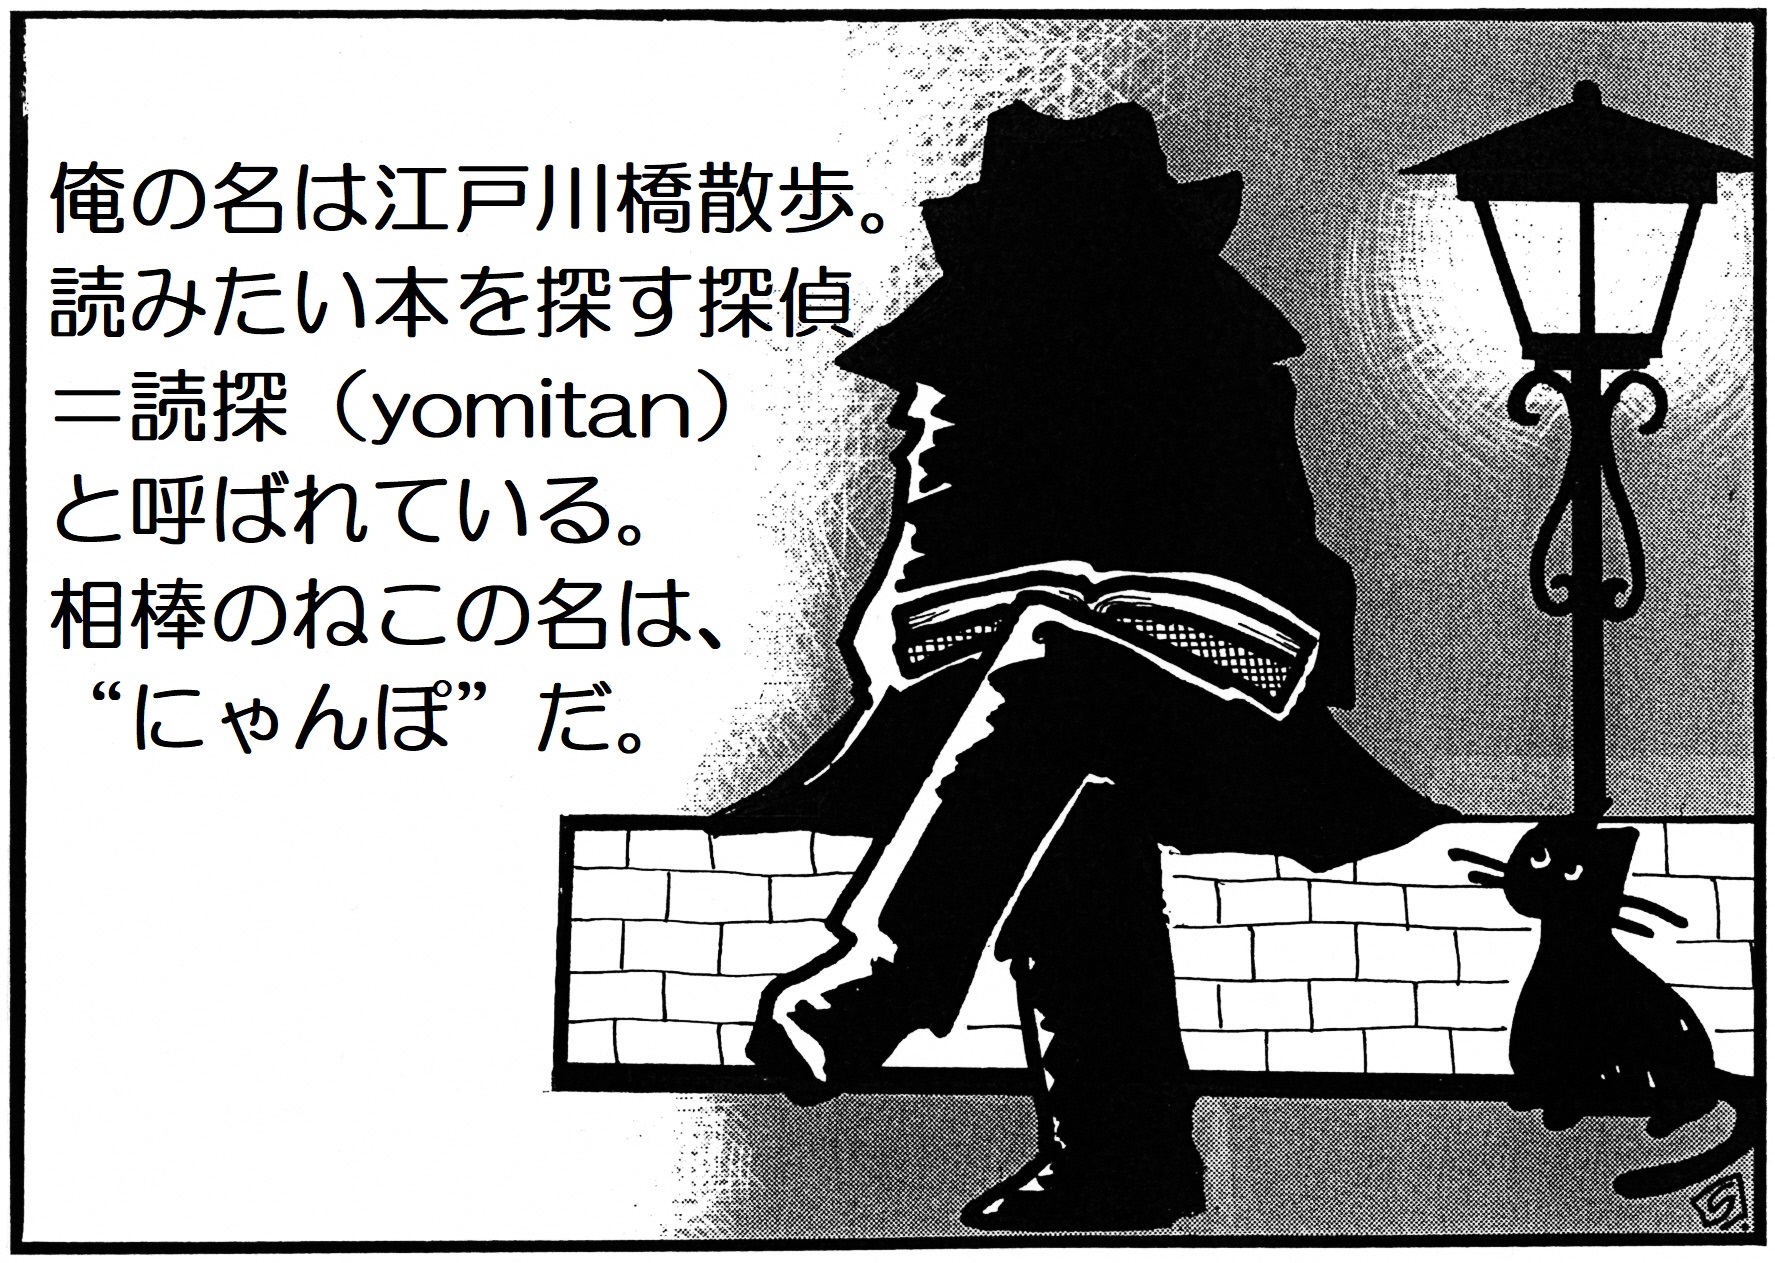 俺の名は江戸川橋散歩。読みたい本を探す探偵、ヨミタンと呼ばれている。相棒のねこの名は、にゃんぽ、だ。